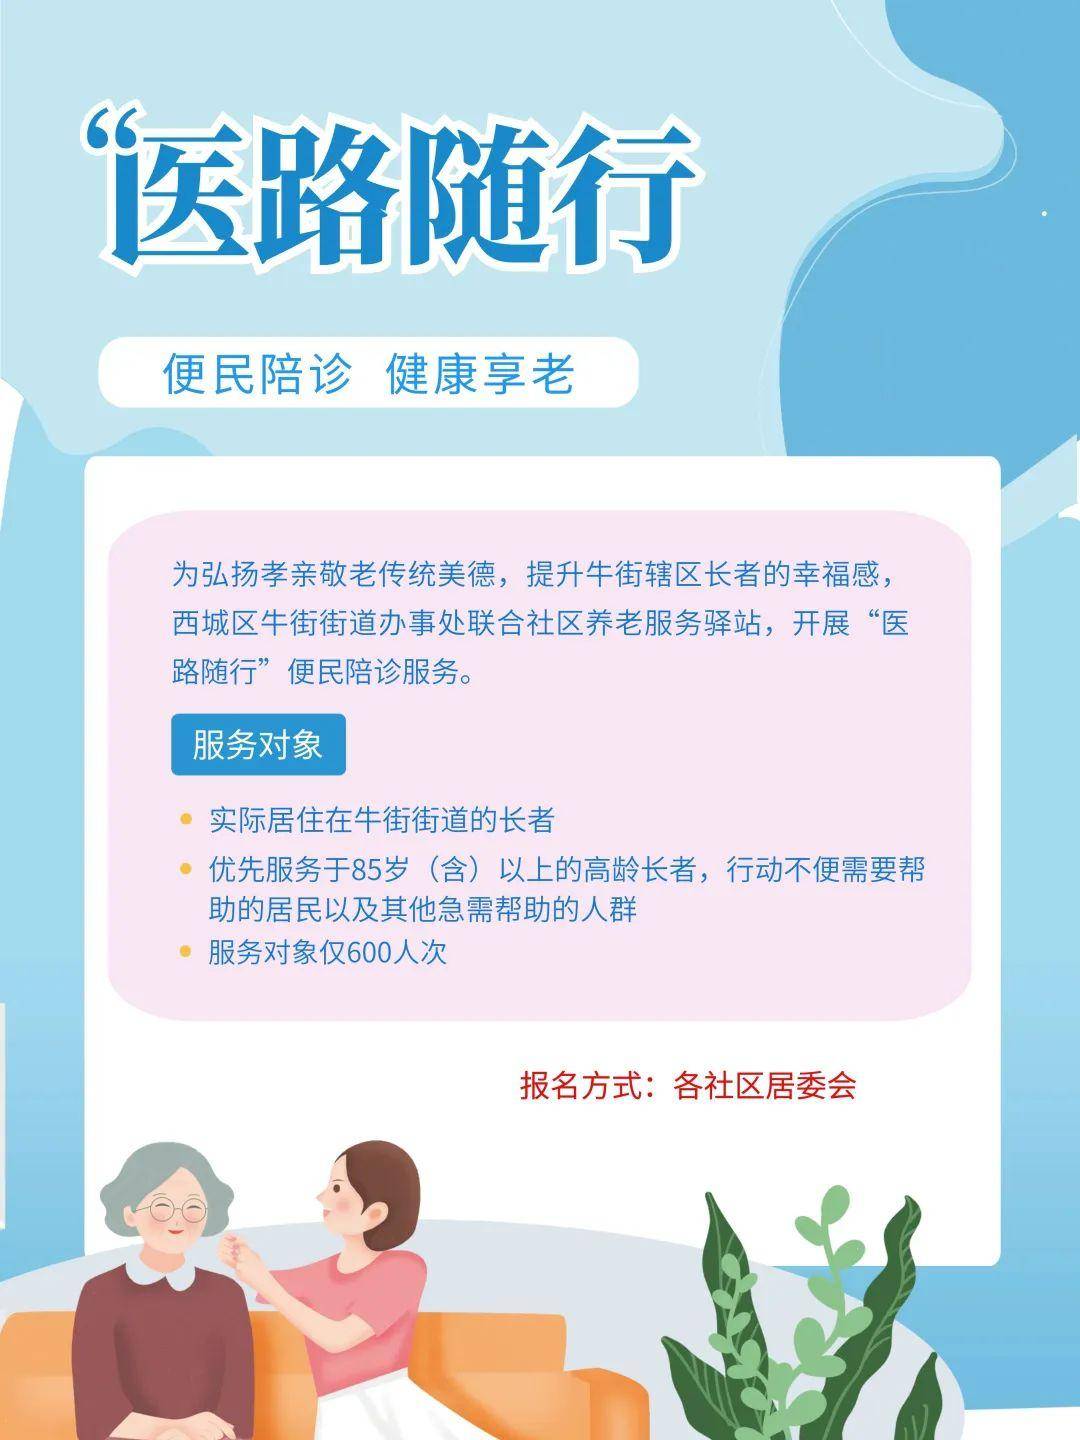 包含大庆市人民医院医院跑腿陪诊挂号，助您医路轻松的词条